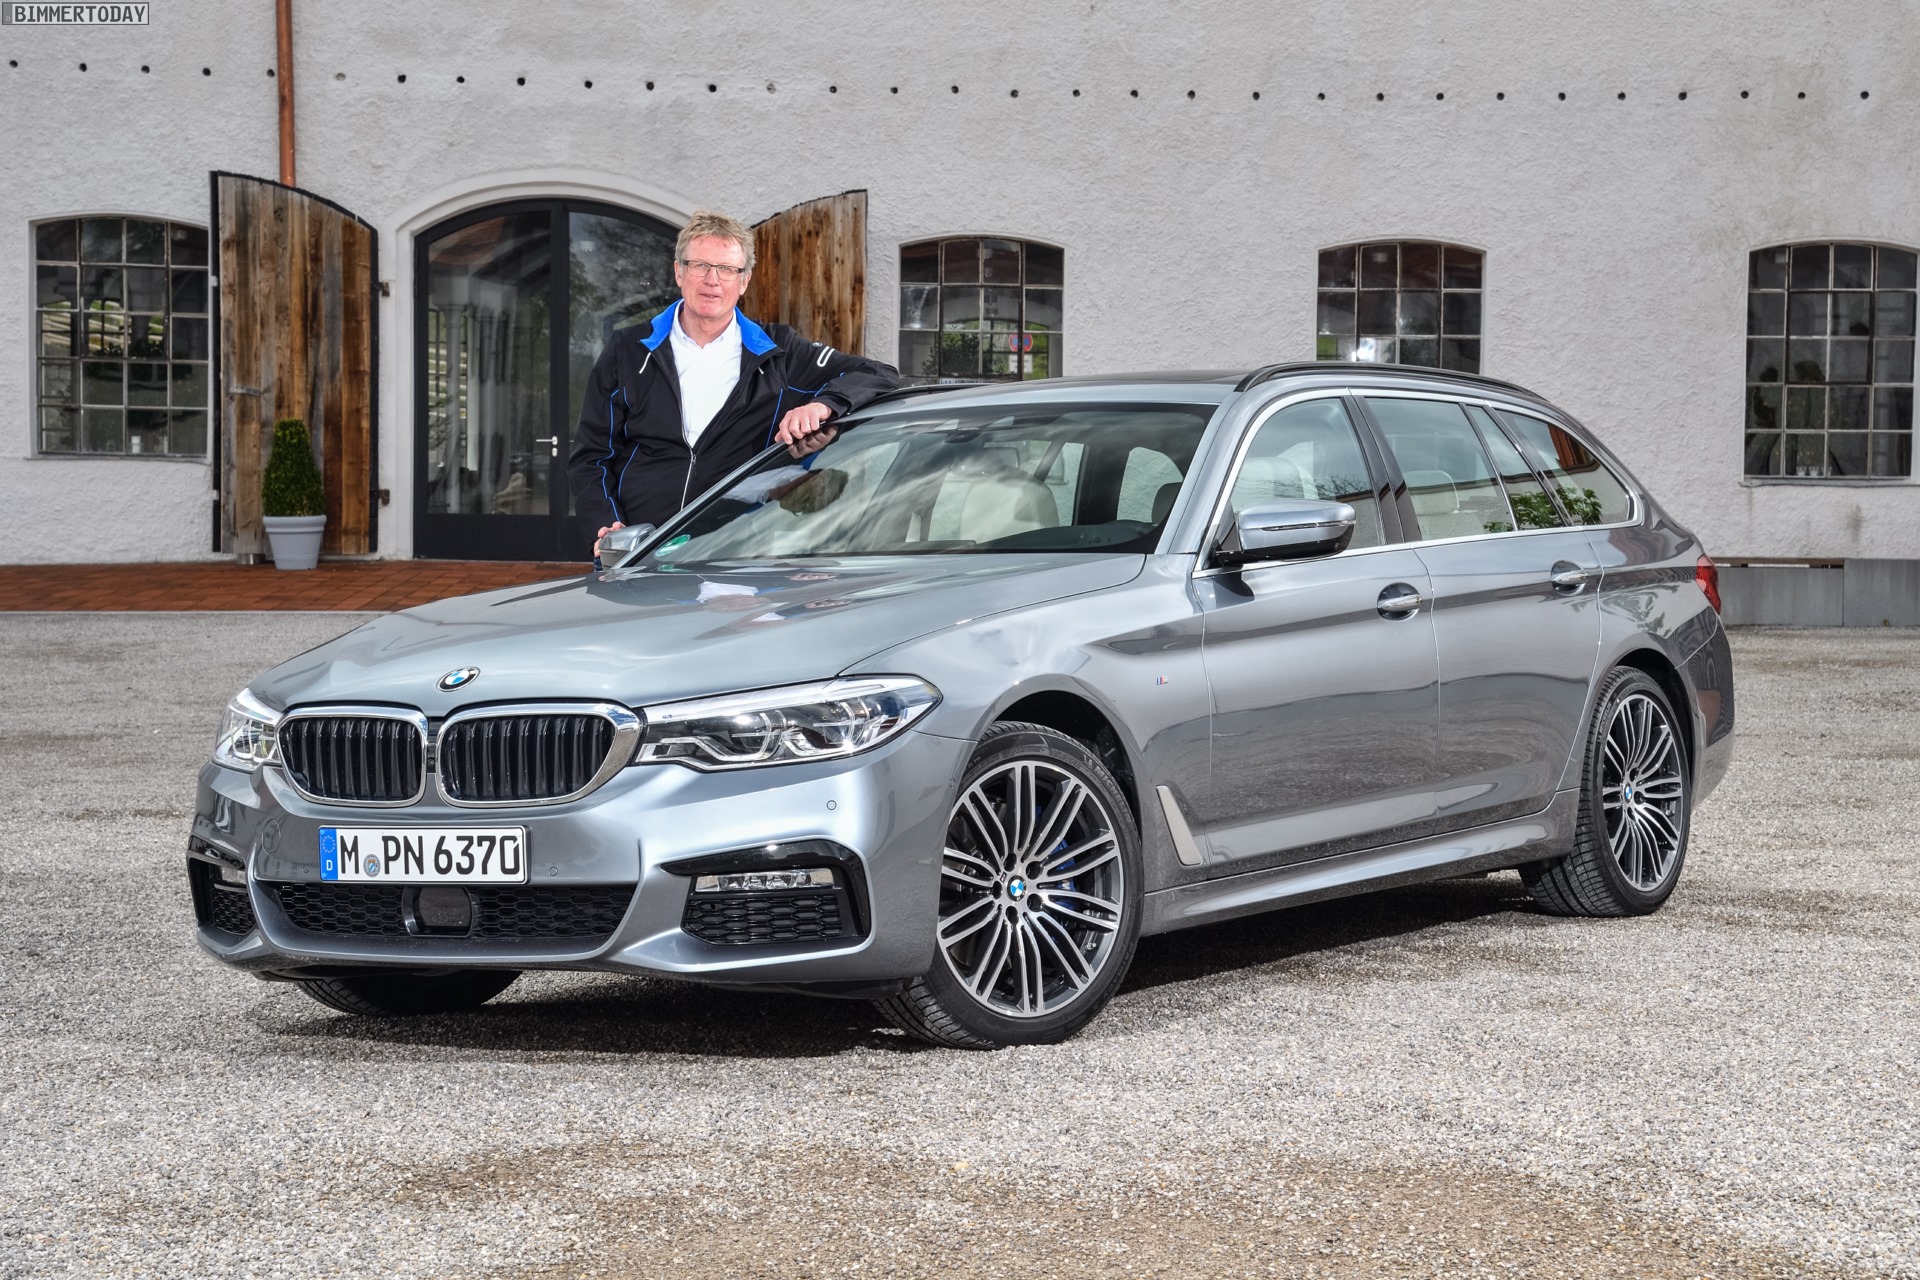 https://cdn.bimmertoday.de/wp-content/uploads/2017/05/BMW-5er-Touring-G31-Claus-Otto-Griebel.jpg